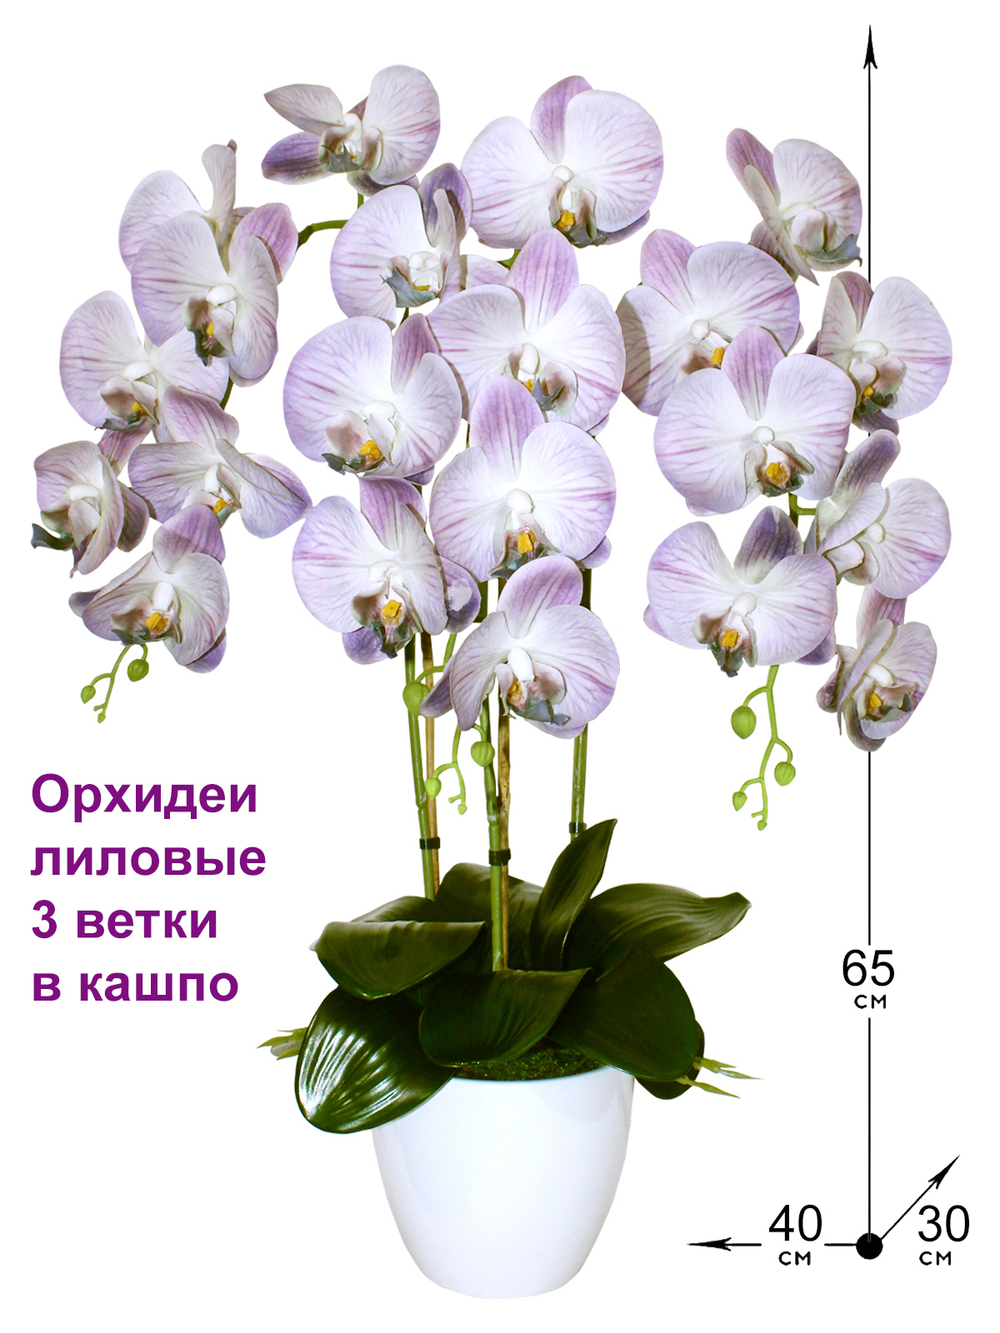 Искусственные цветы Орхидеи 3 ветки лиловые латекс 65см в кашпо